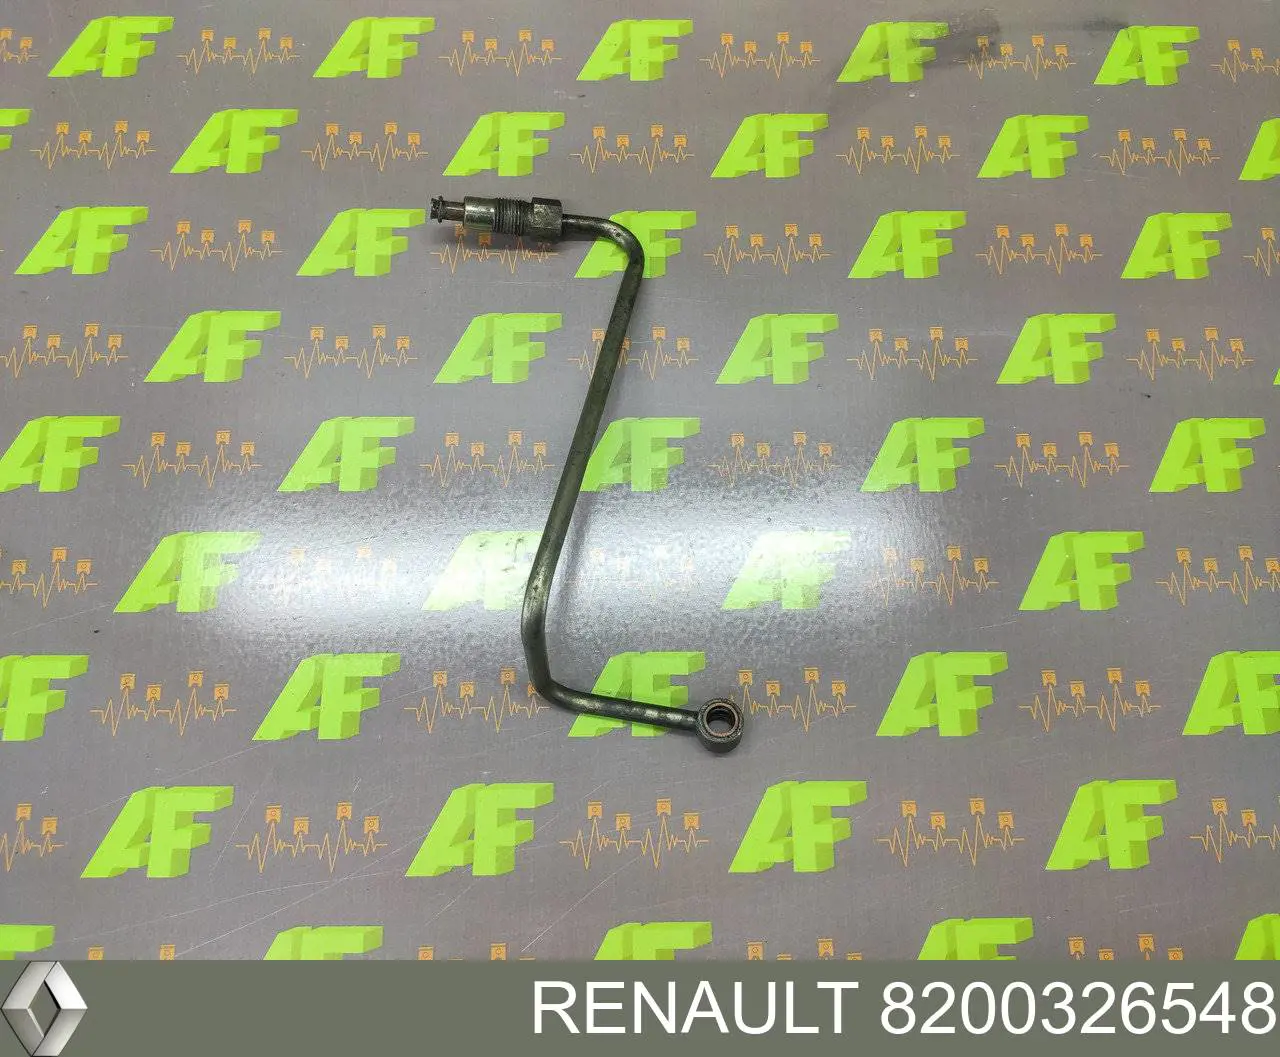 8200326548 Renault (RVI) tubo (manguera Para El Suministro De Aceite A La Turbina)